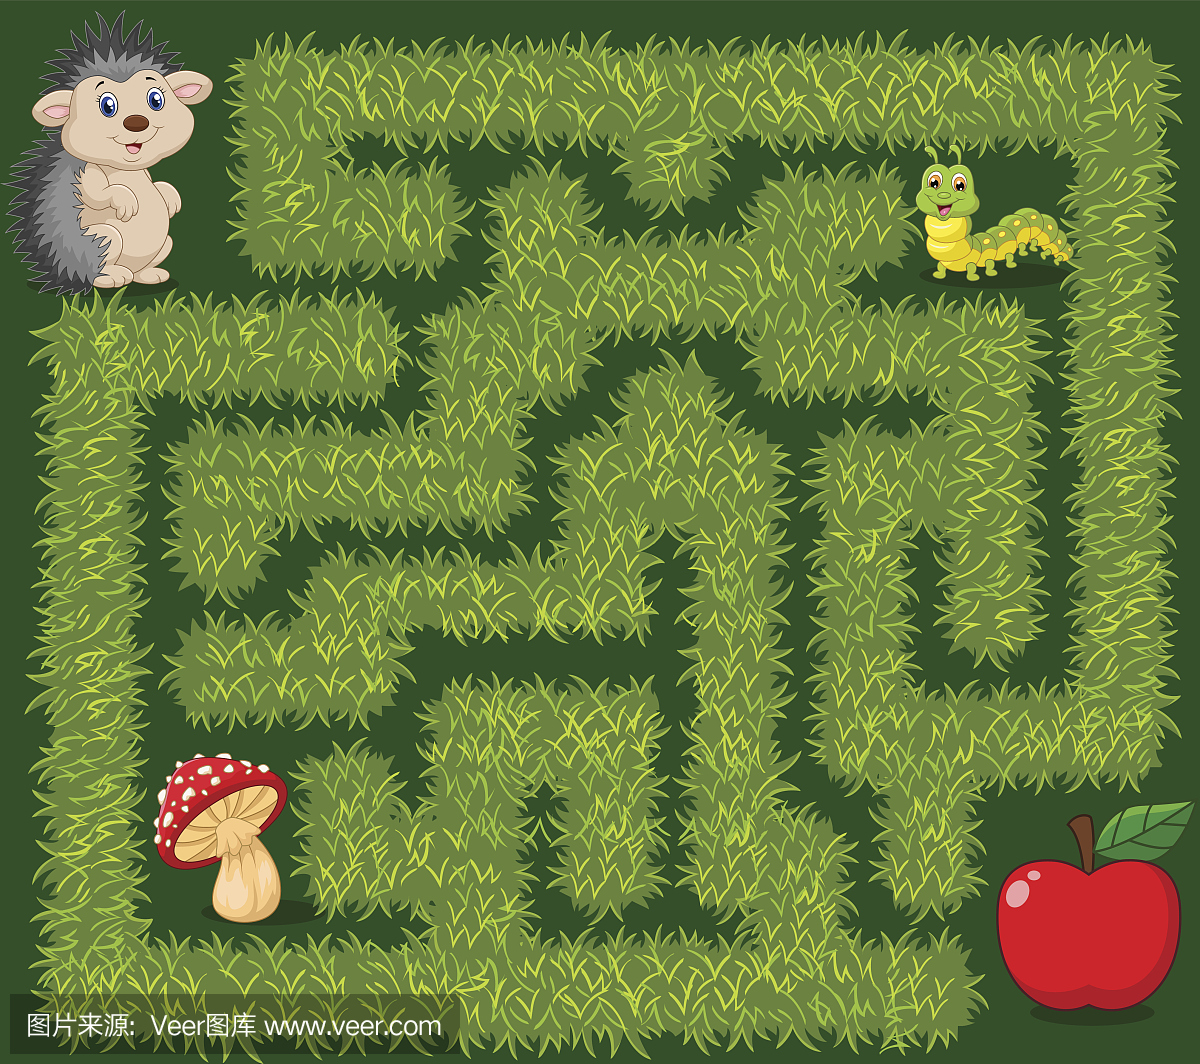 帮助刺猬找到苹果水果在草地上的方式